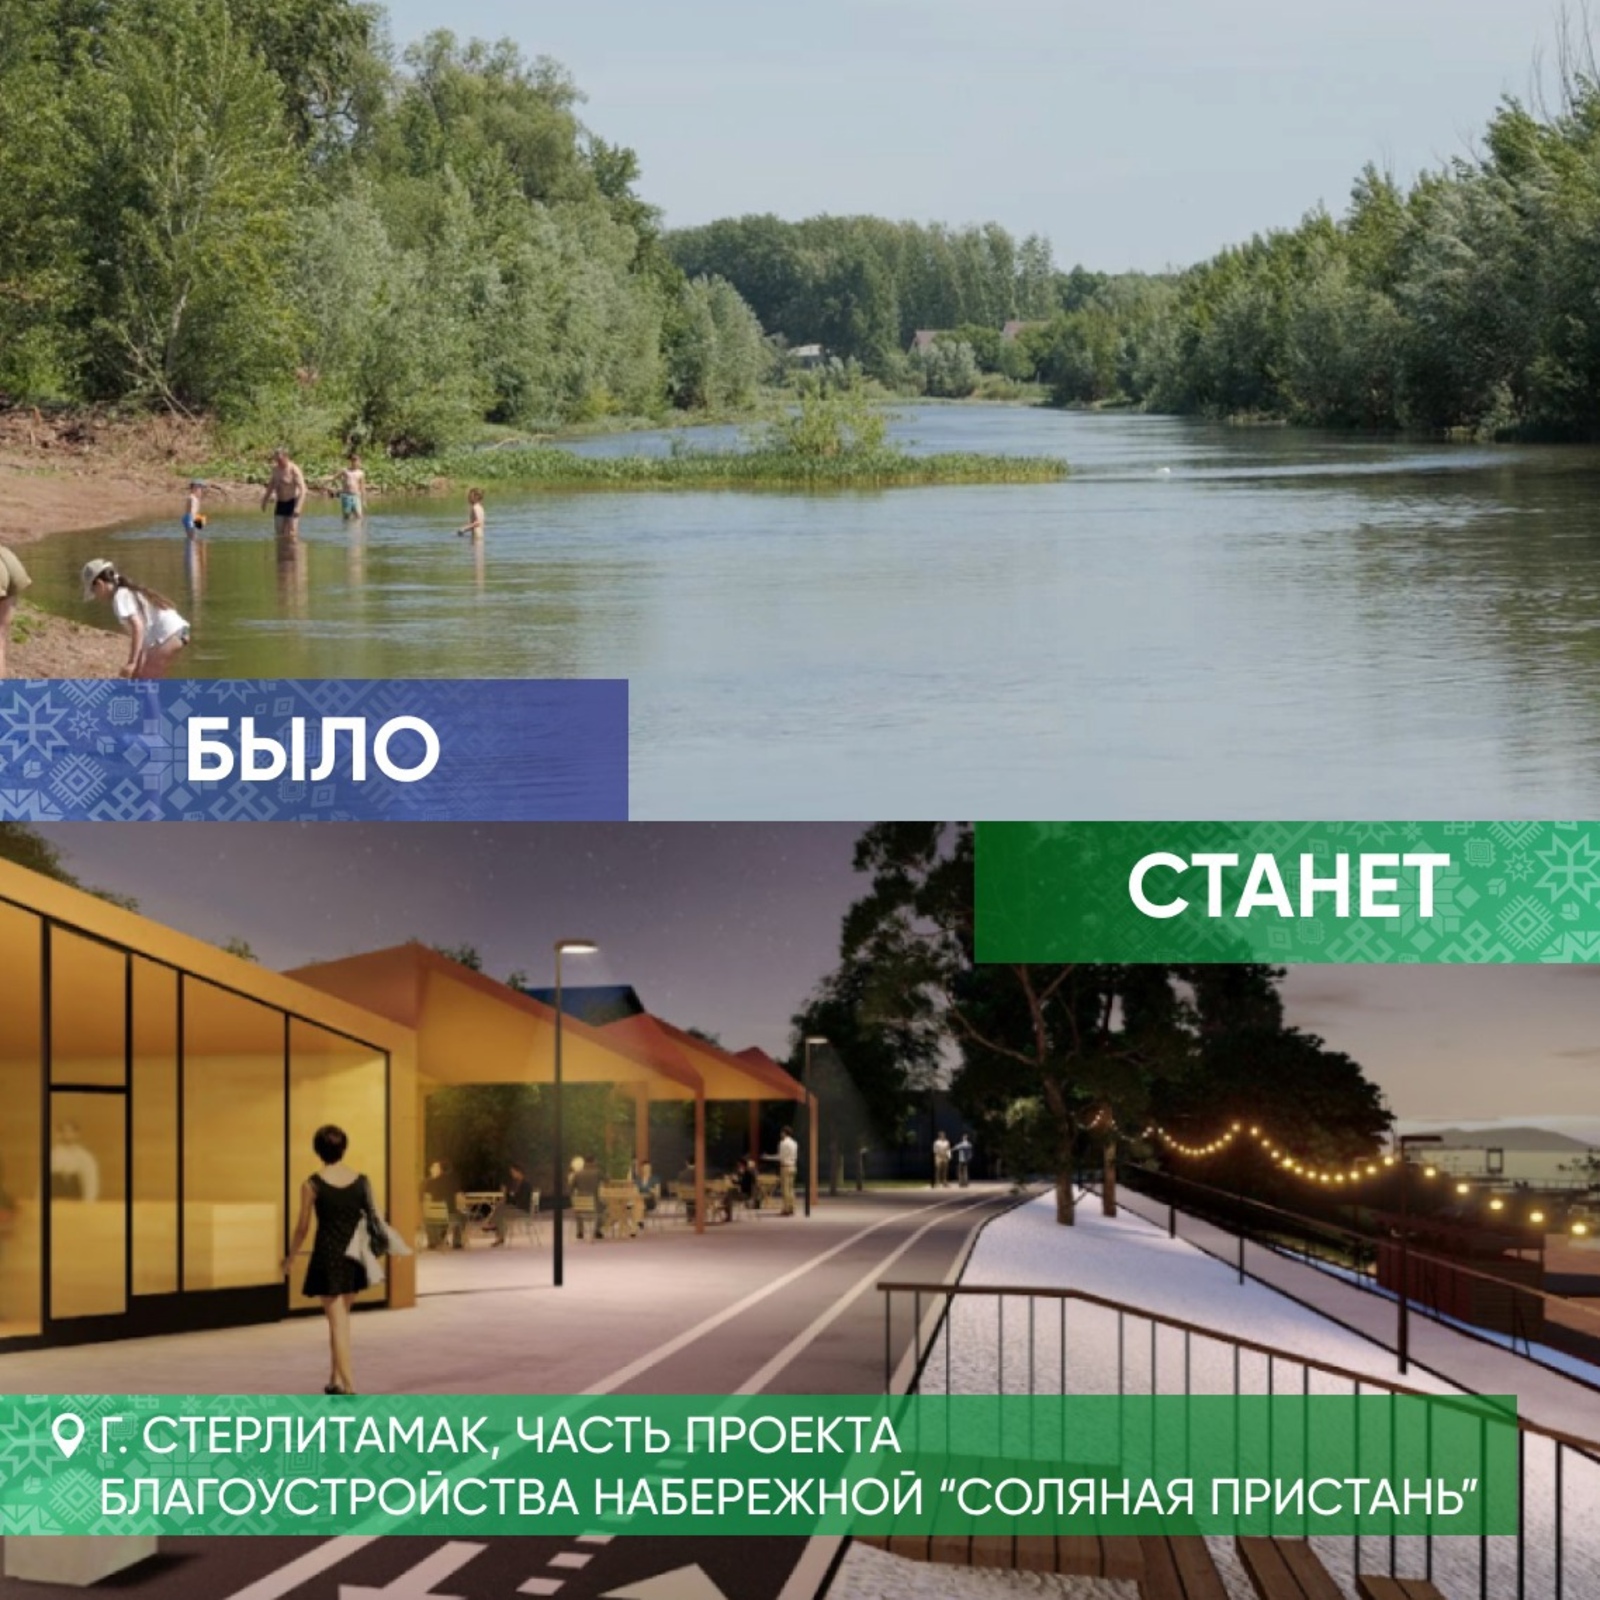 Шесть городов Башкирии победили в конкурсе по формированию комфортной среды